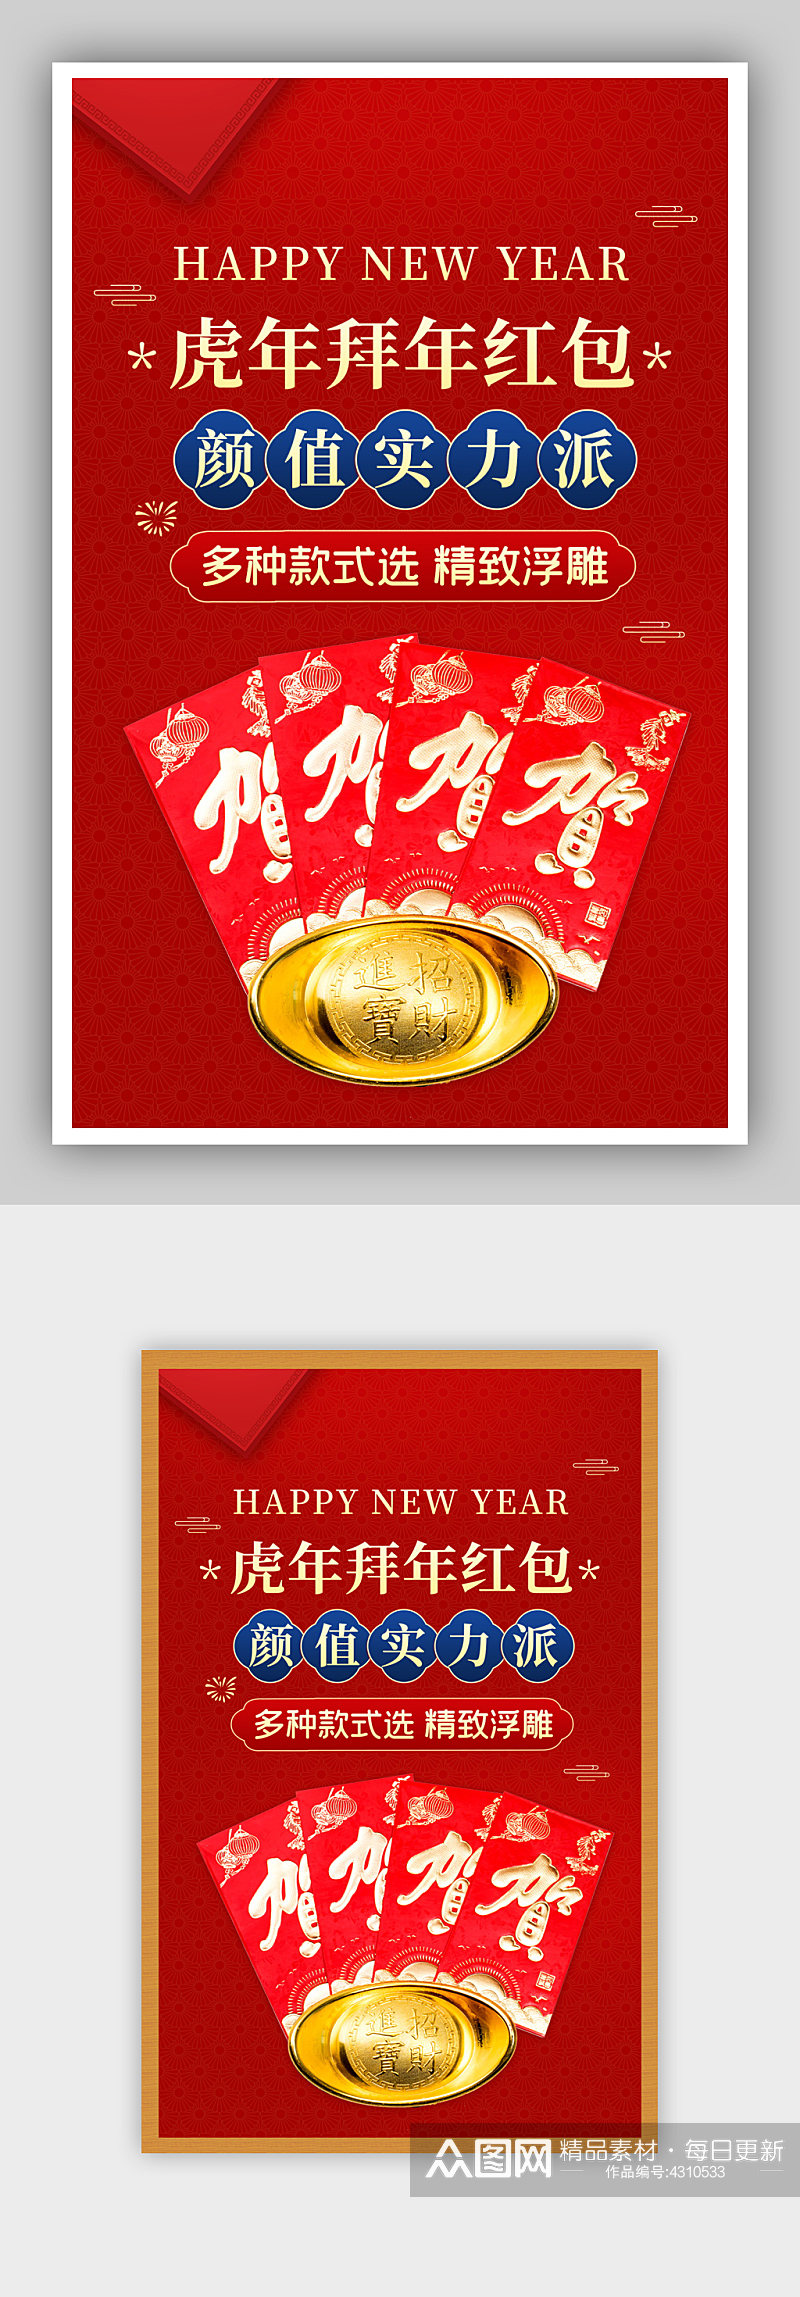 虎年新年春节不打烊拜年压岁钱红包海报素材